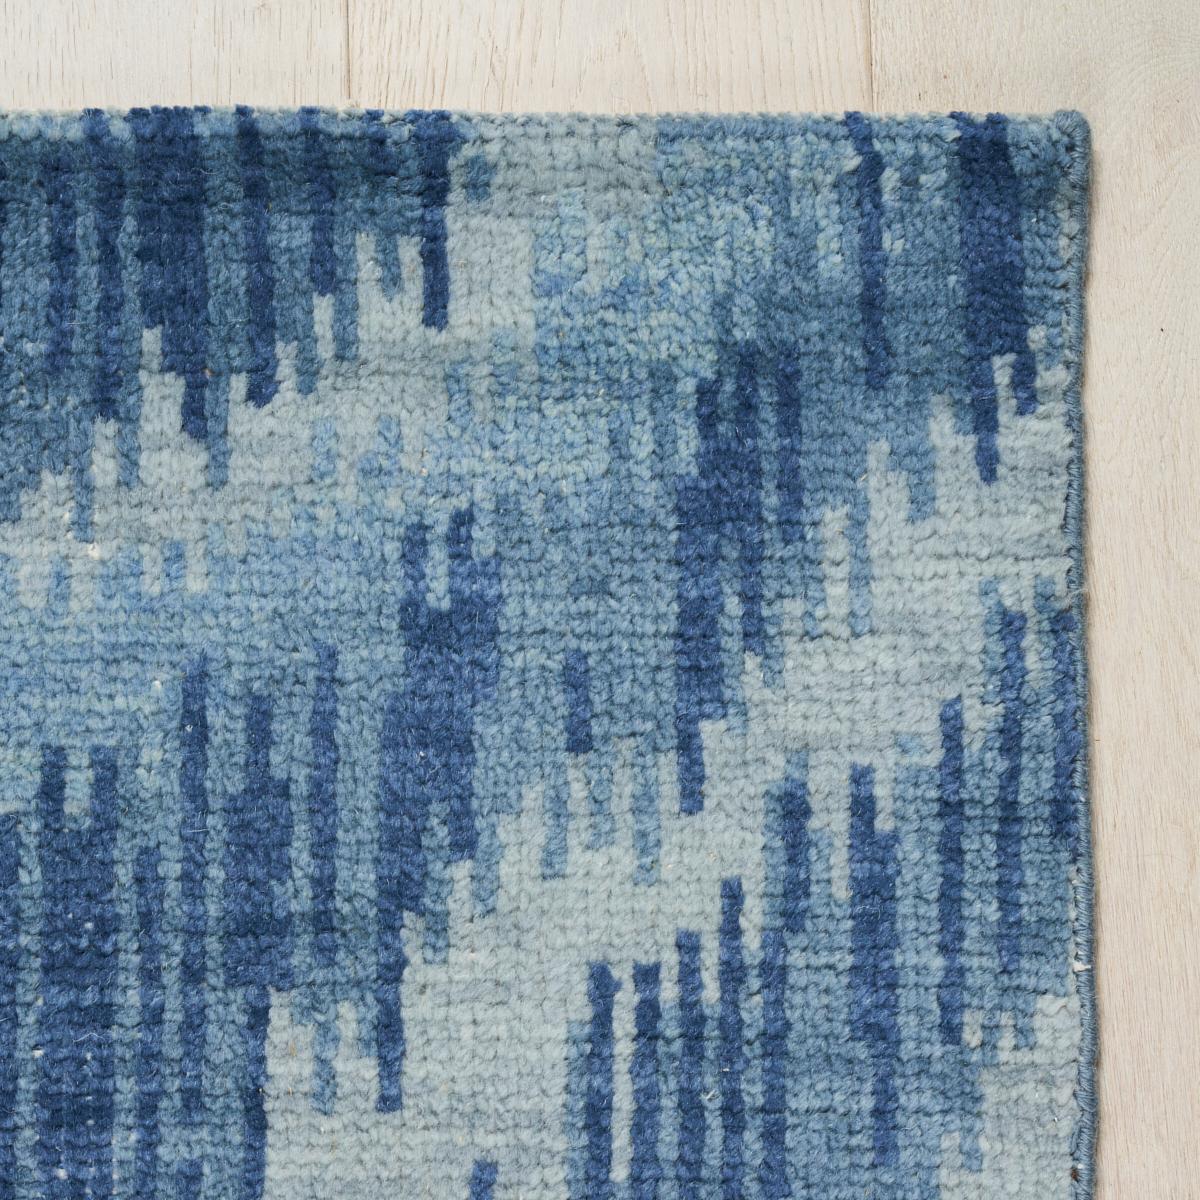  Ein tonales, wellenförmiges Muster, das vom klassischen Bargello inspiriert ist. Venetian Flame Stitch ist ein zeitloses Teppichdesign, das sich sowohl in modernen als auch in traditionellen Innenräumen gut macht. Mit seinem weichen Streifeneffekt